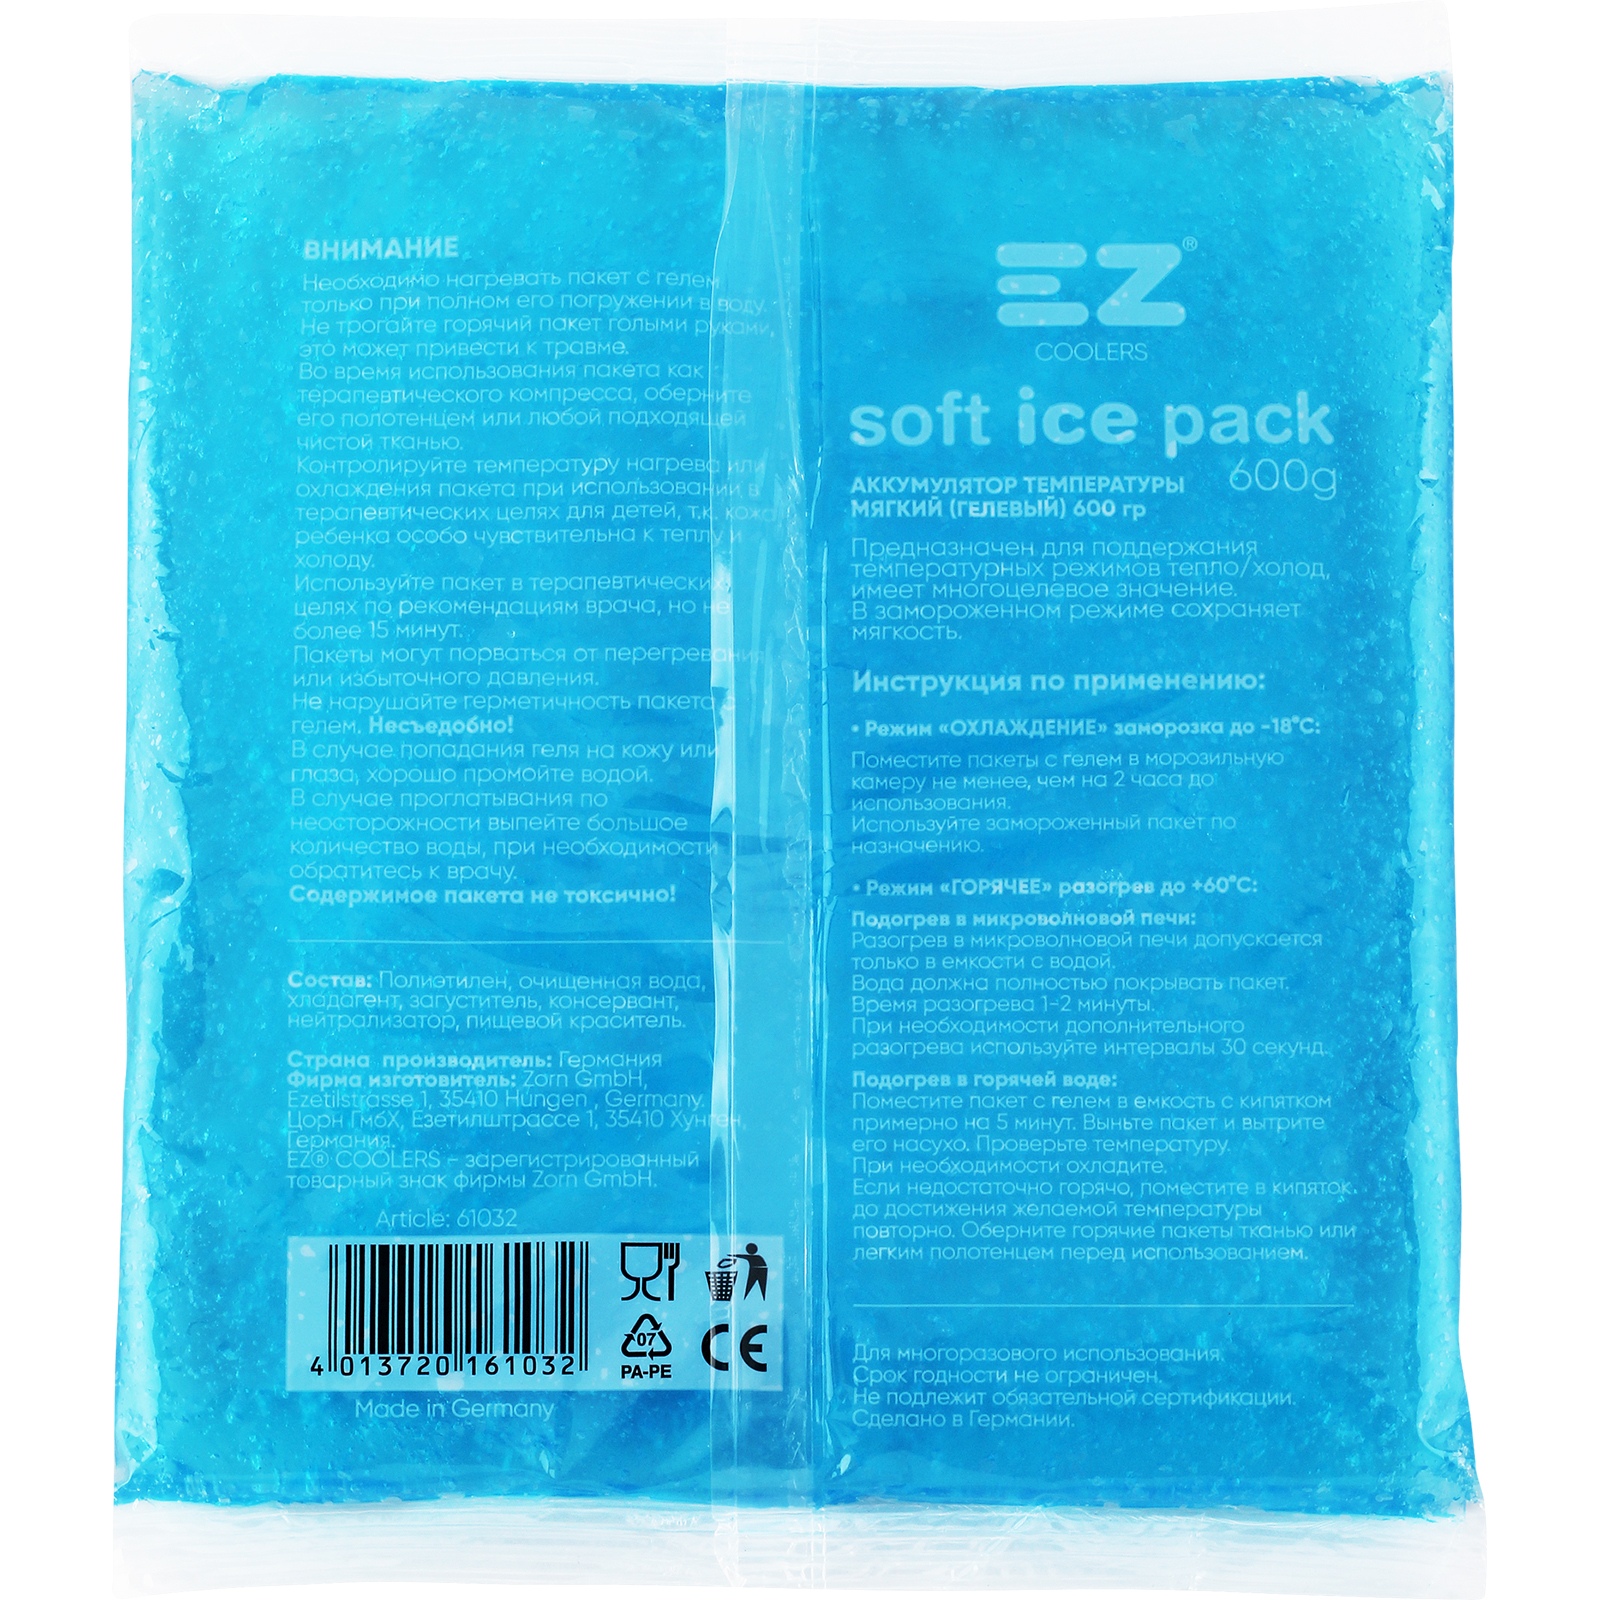 Аккумулятор холода EZ Coolers Soft Ice Pack 600 г 61032, цвет синий - фото 2